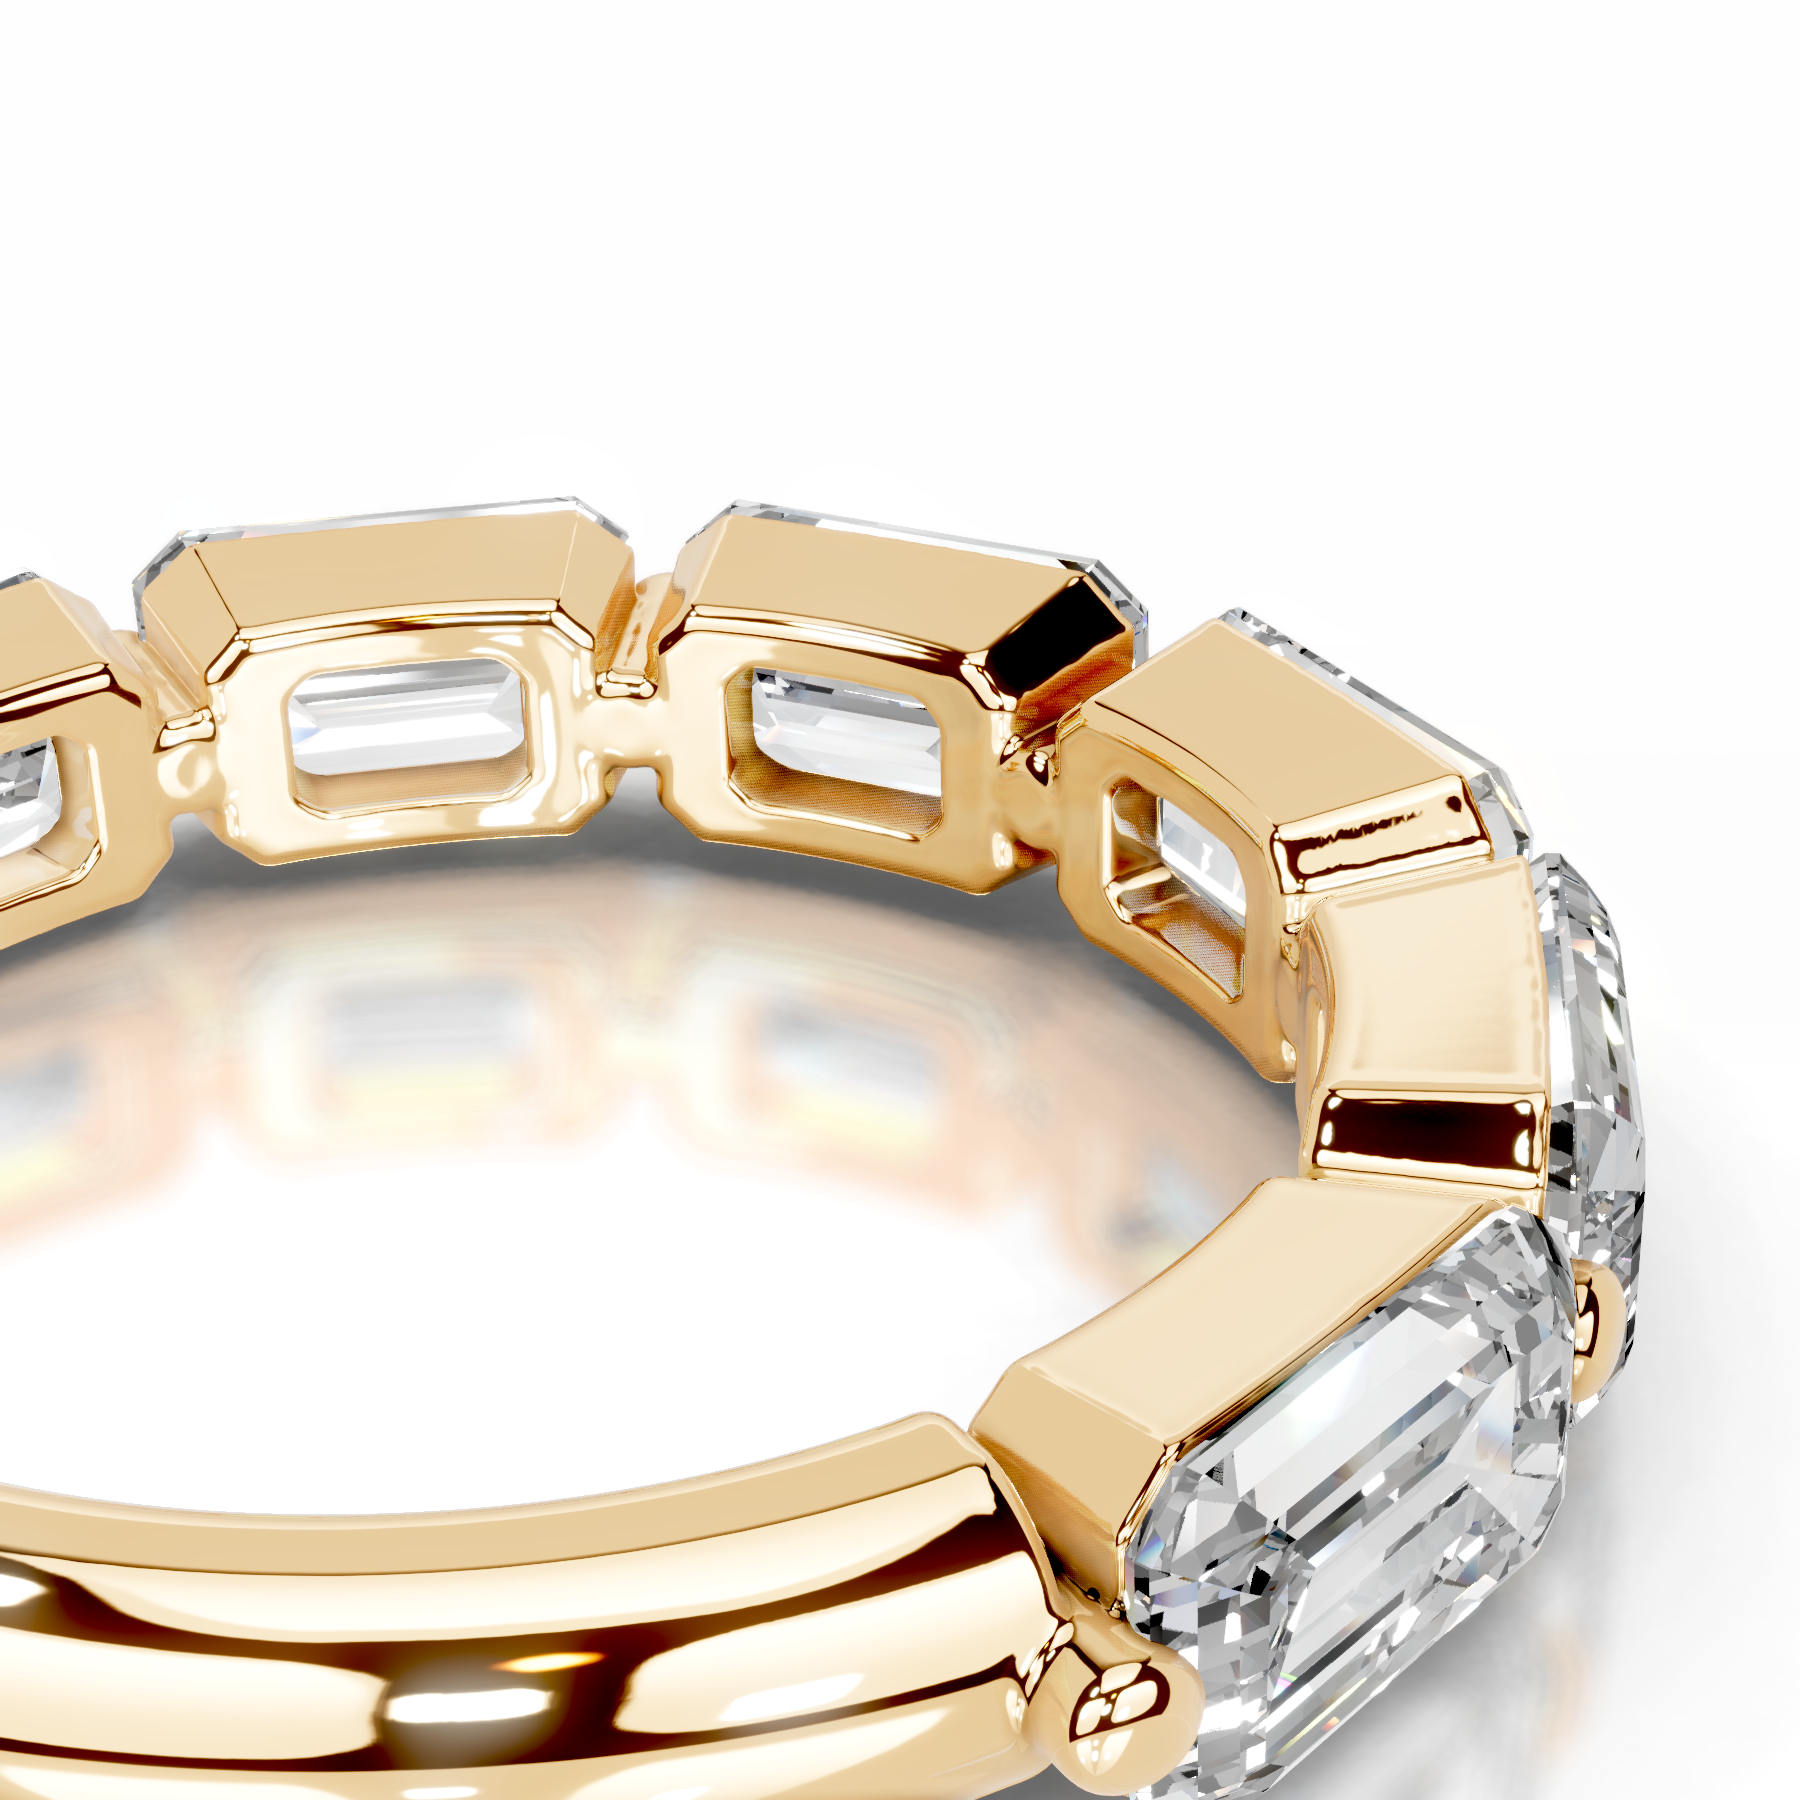 Quisha Diamond Wedding Ring   (2 Carat) -18K Yellow Gold